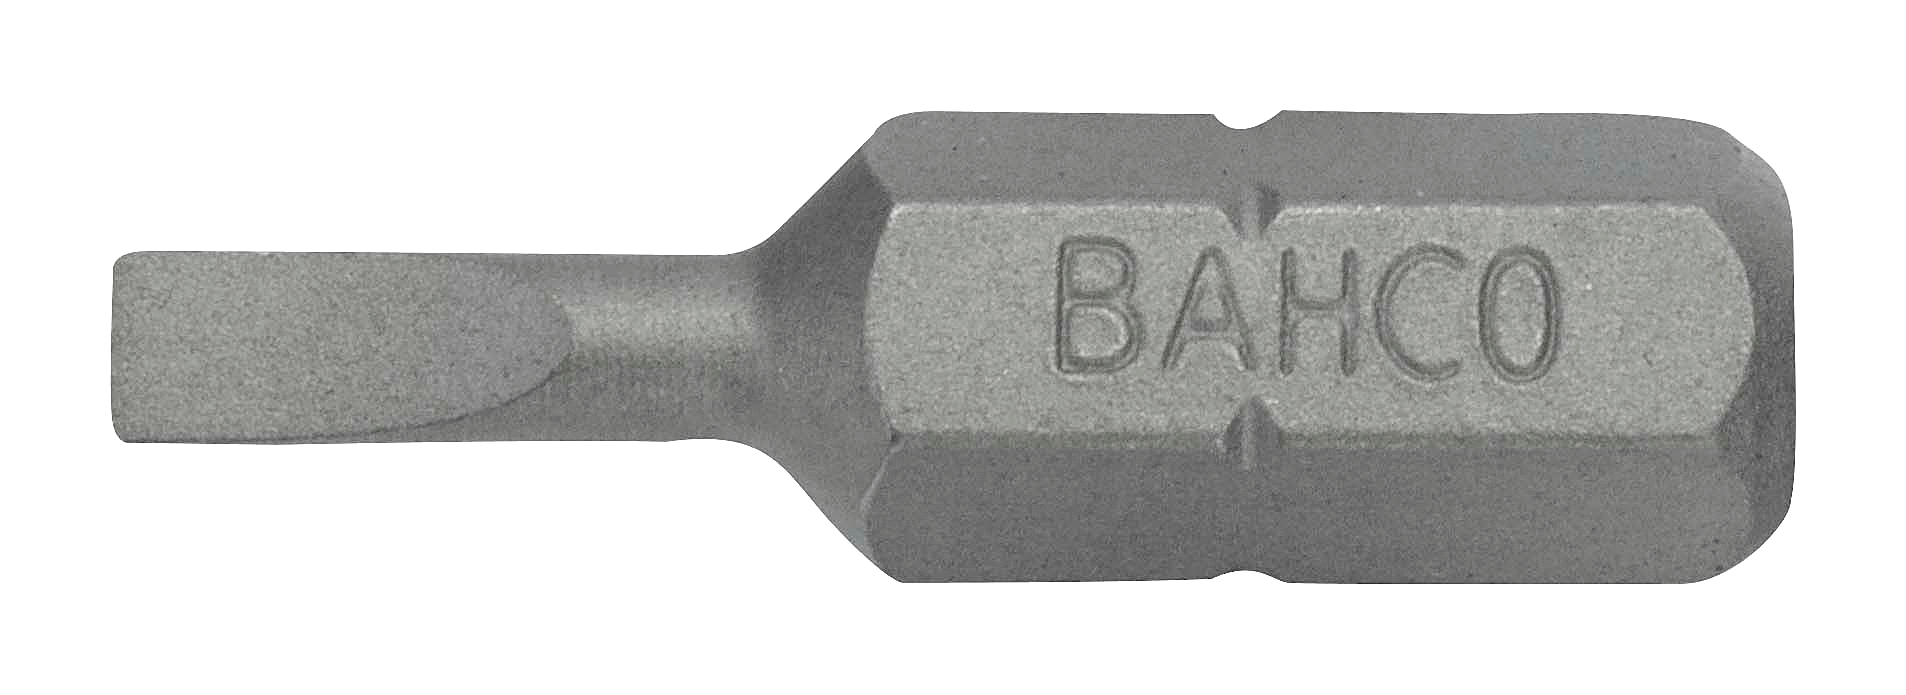 картинка Стандартные биты для отверток под винты со шлицем, 25 мм BAHCO 59S/0.5-4.0 от магазина "Элит-инструмент"